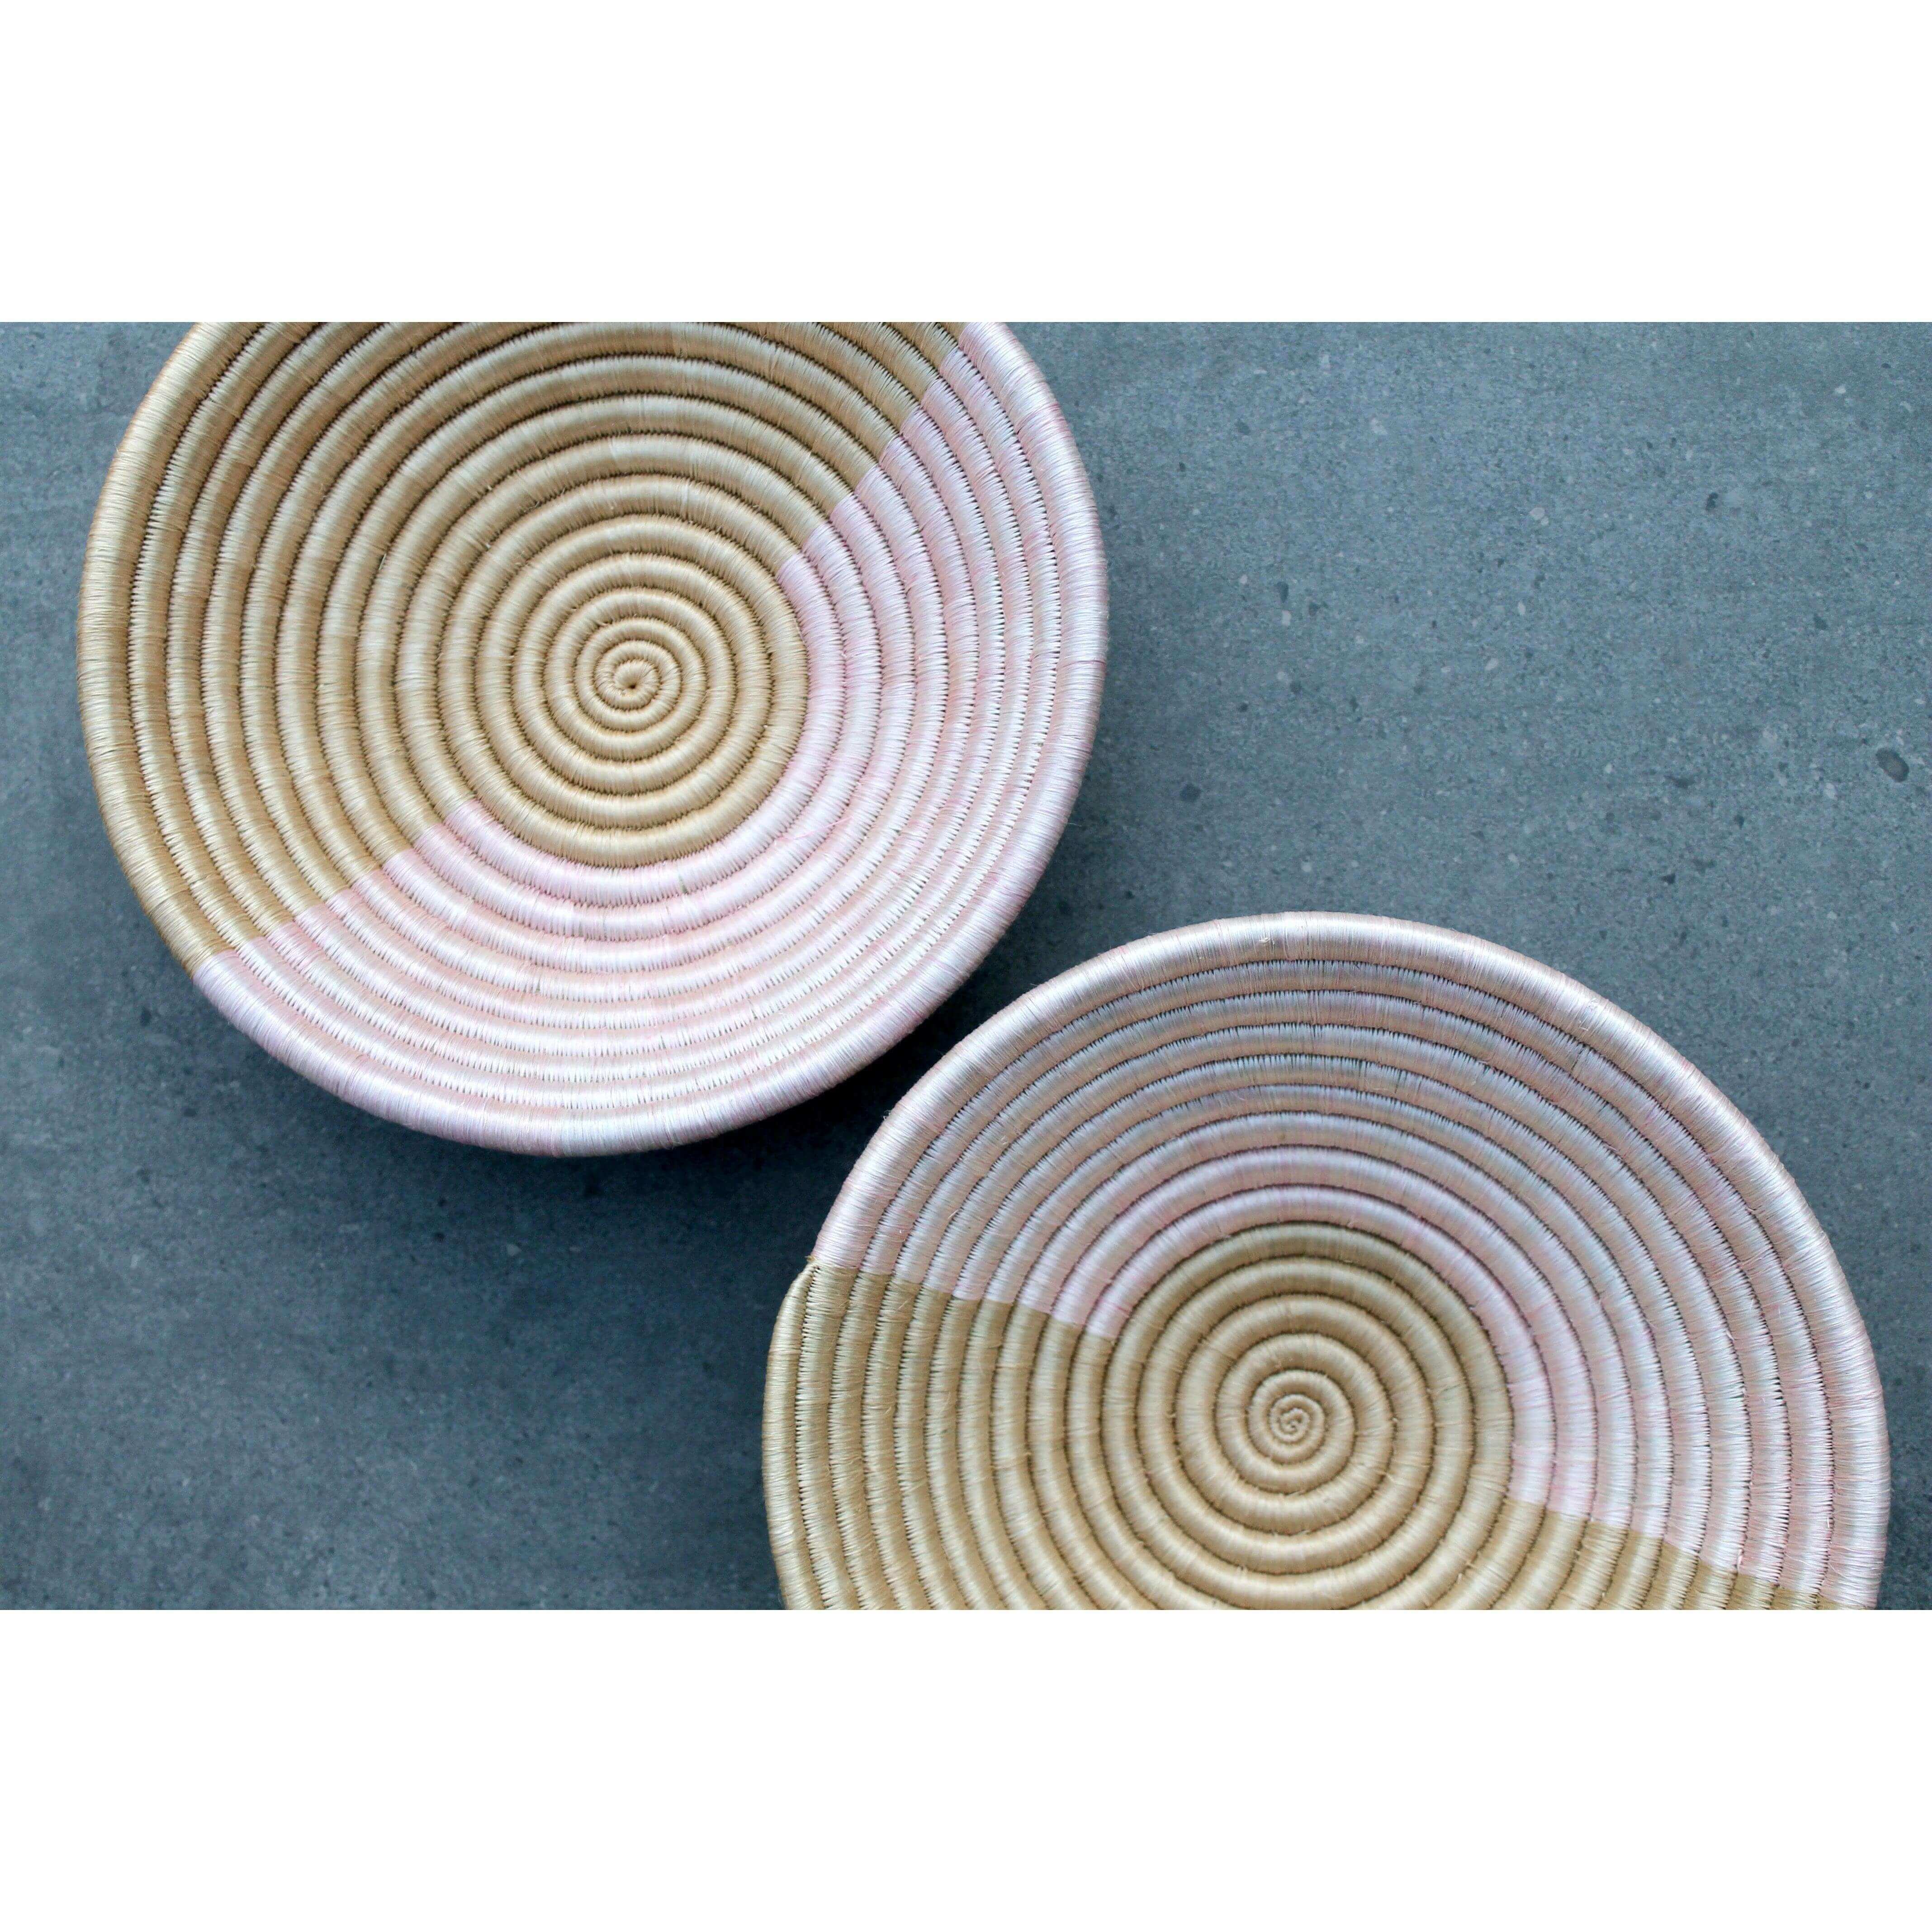 Handmade woven fruit bowls